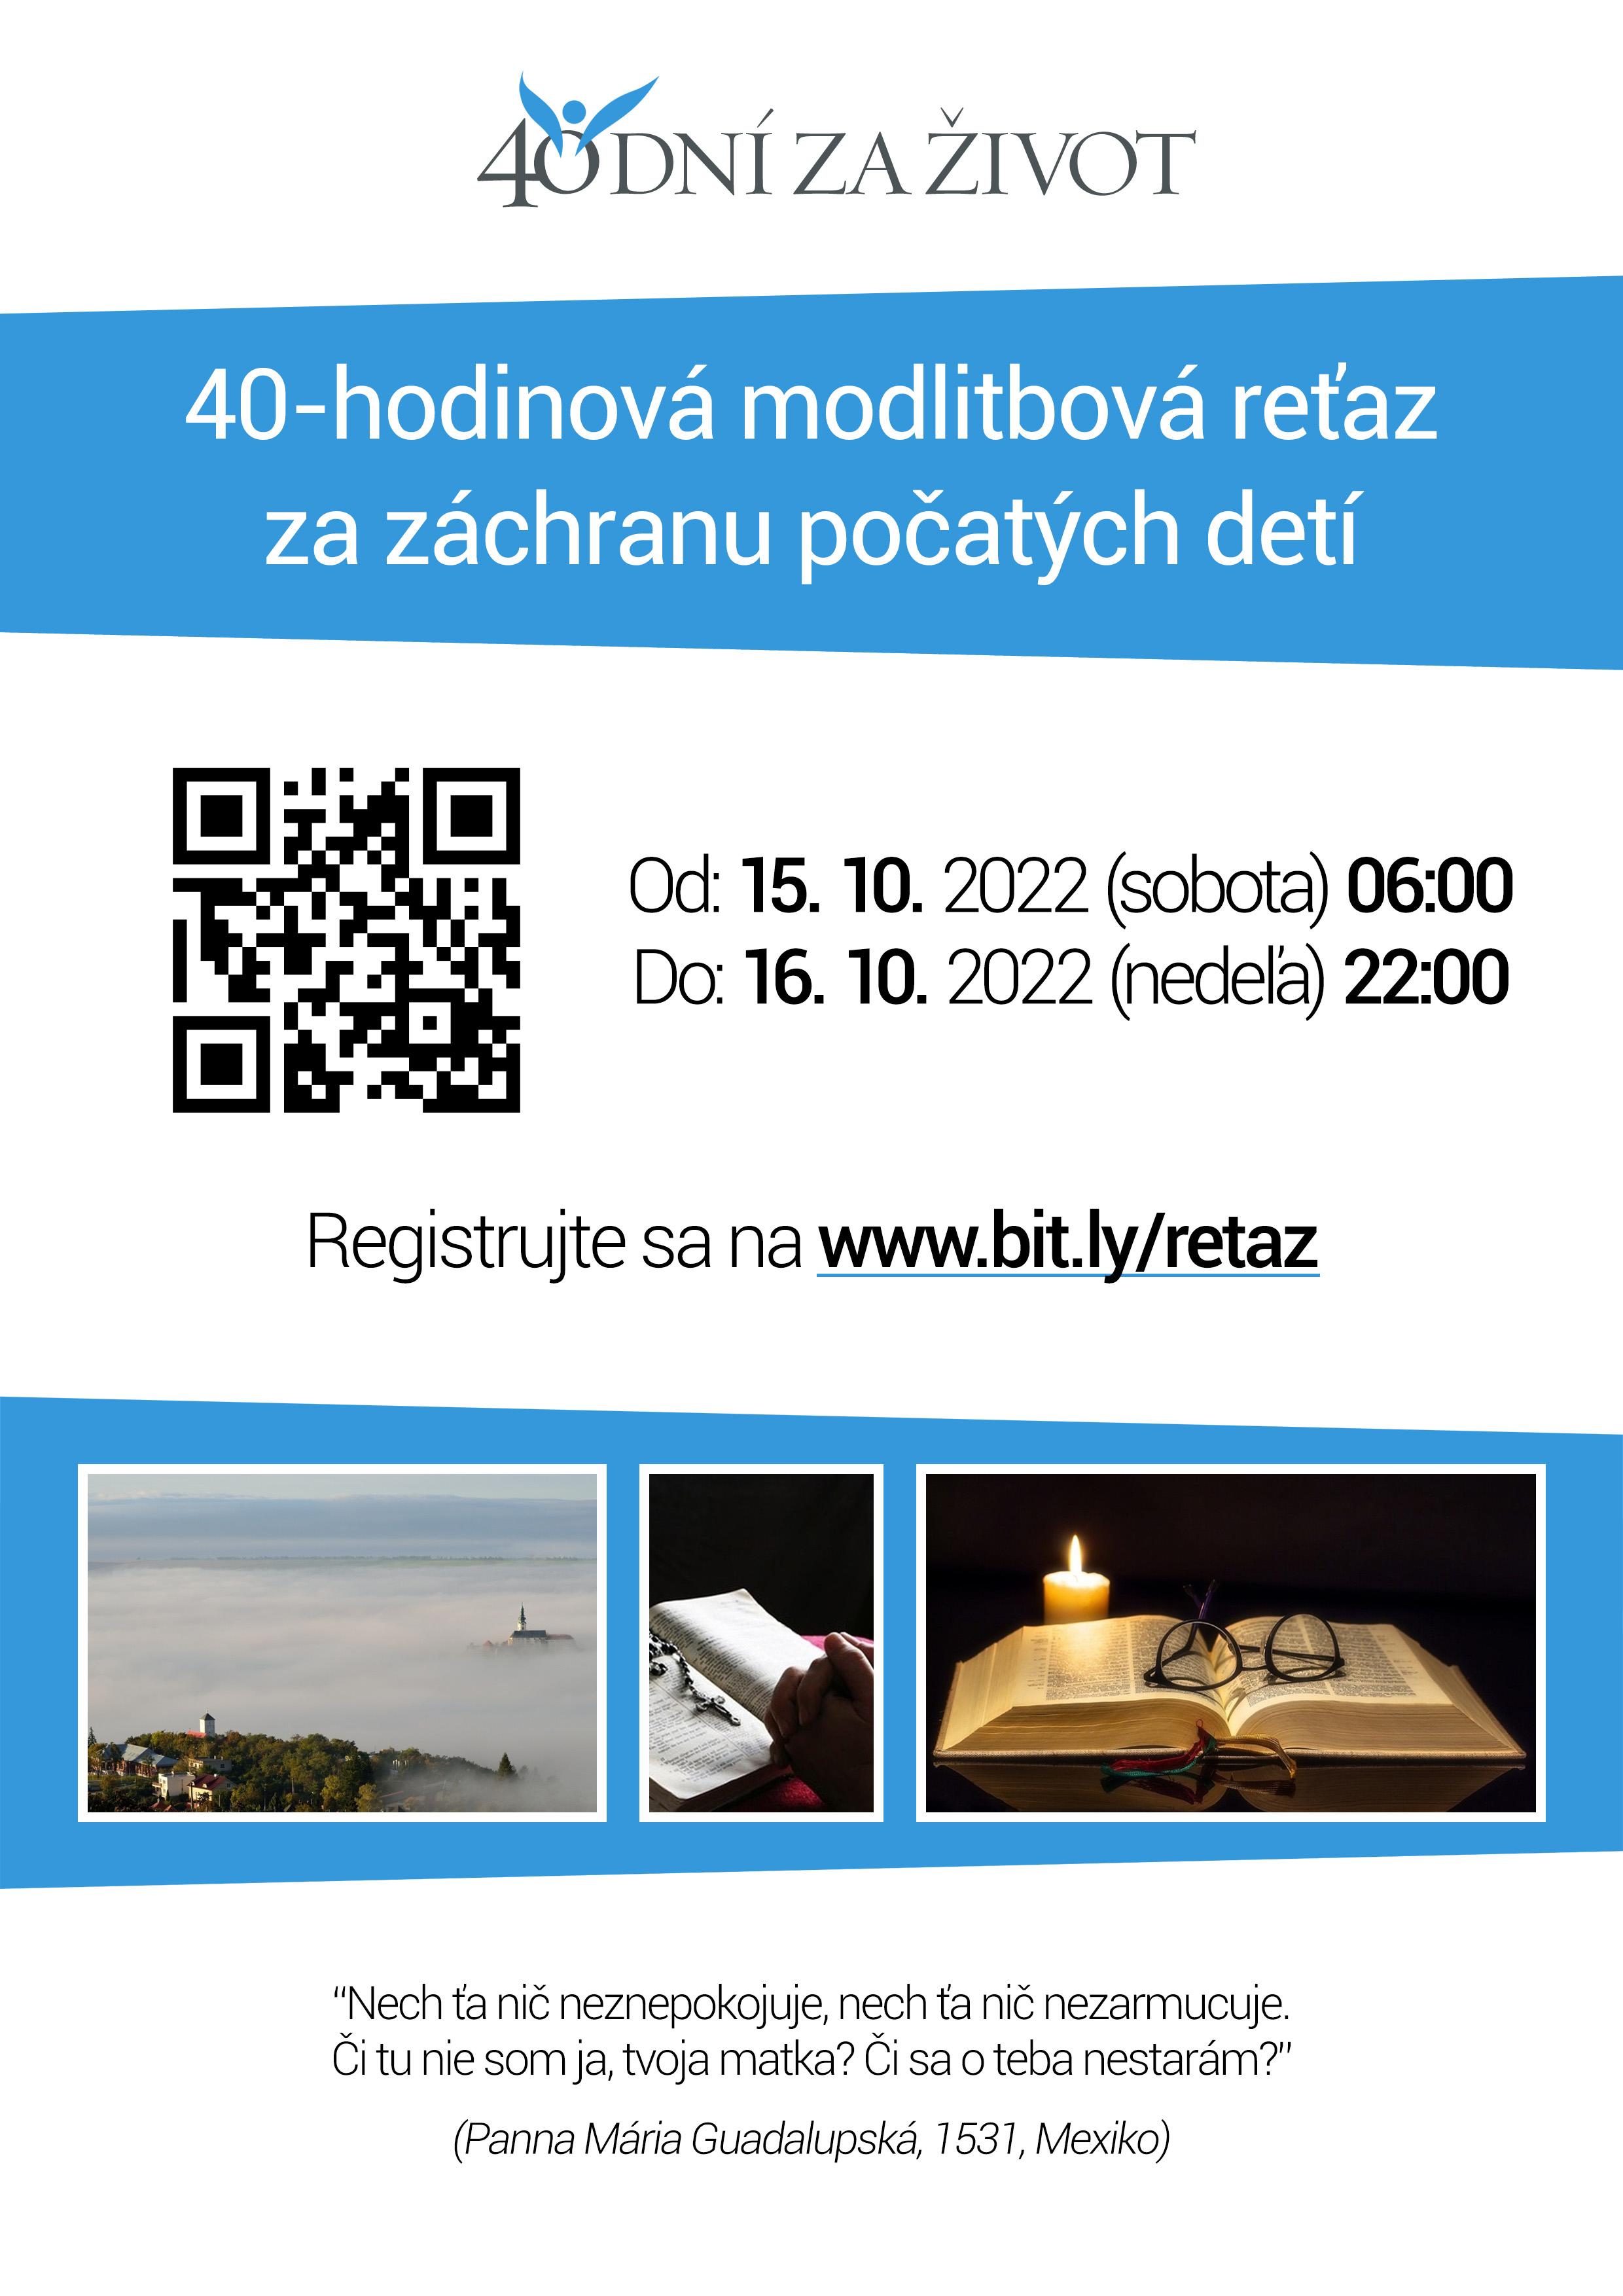 Bratislava,retaz, modlitby, plagat